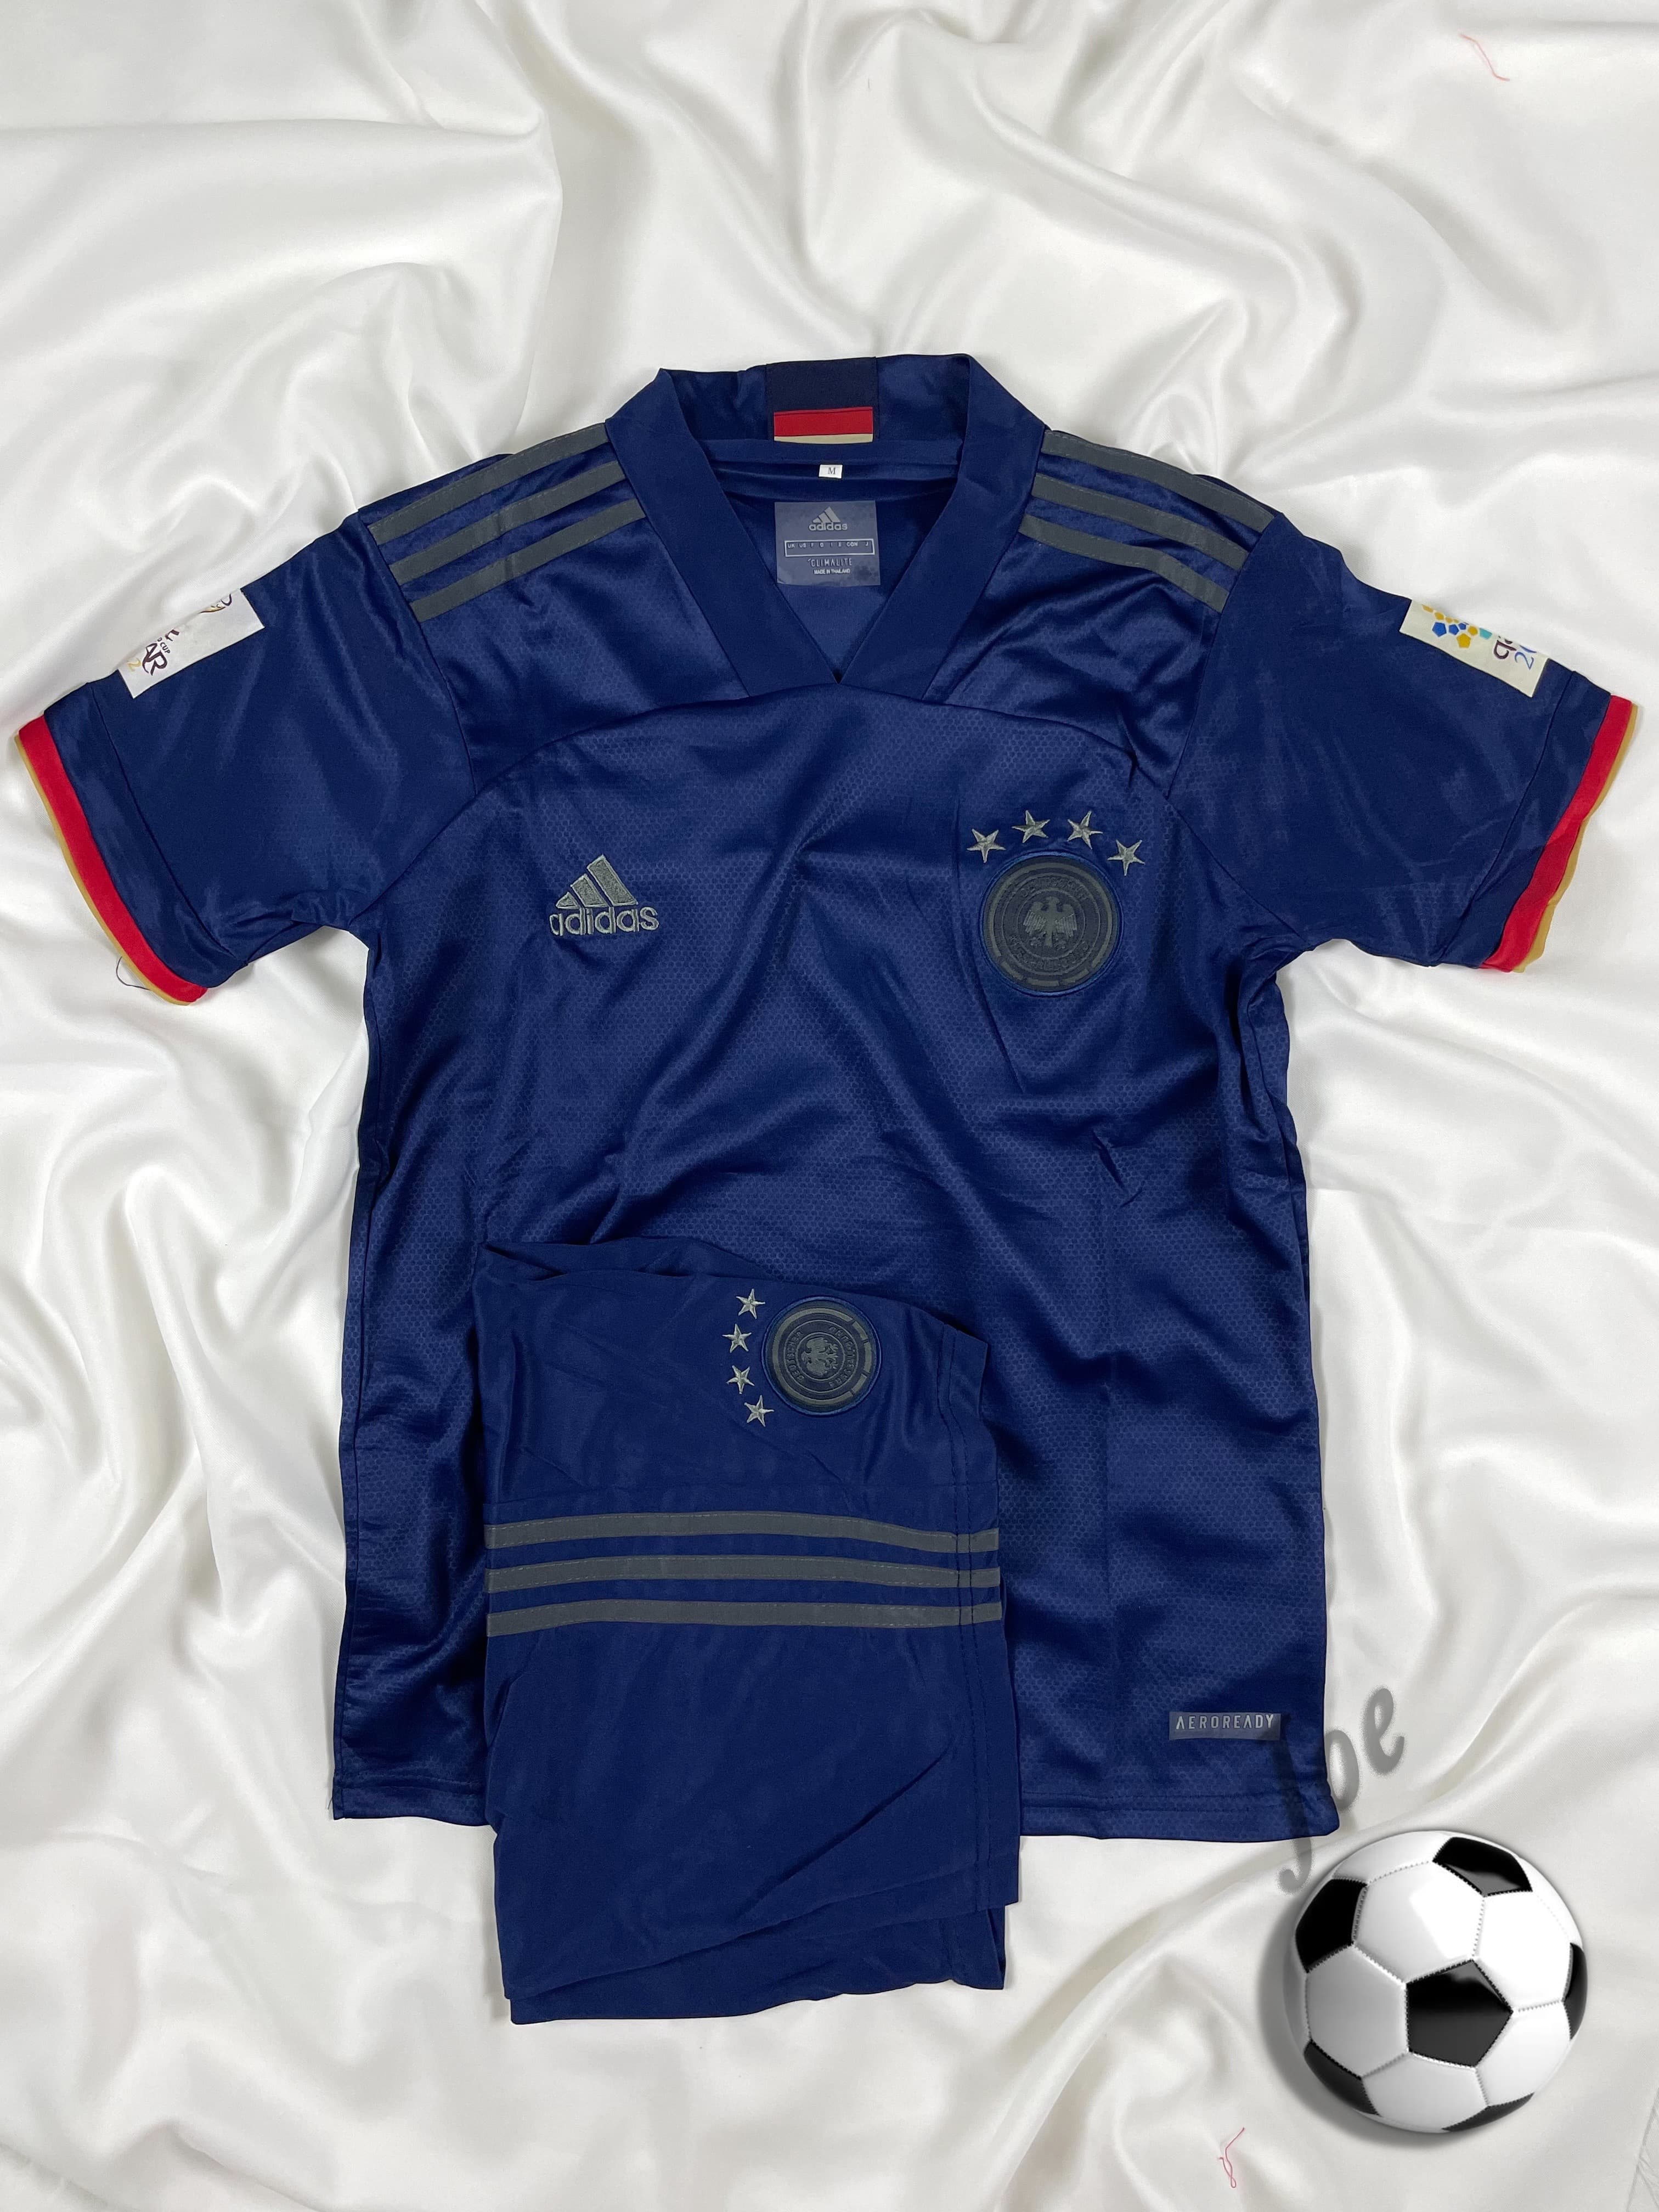 ชุดบอลทีมชาติ Germany (Dark Blue) เสื้อบอลและกางเกงบอลผู้ชาย ปี 2020-2021 ใหม่ล่าสุด